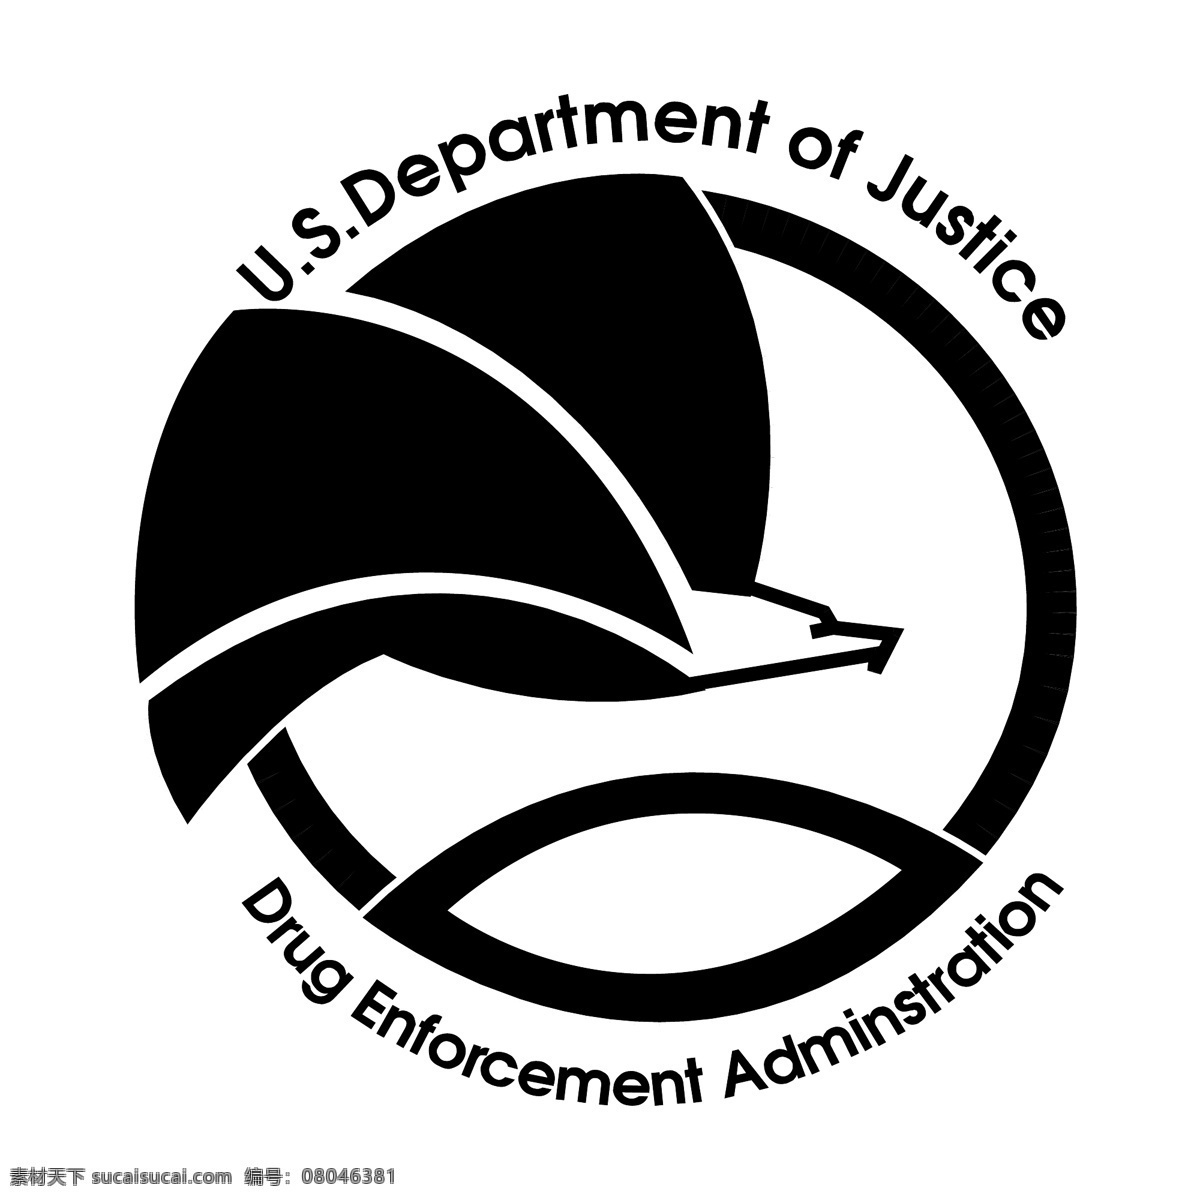 毒品 管制 局 免费 药品 行政执法 标志 标识 缉毒 psd源文件 logo设计